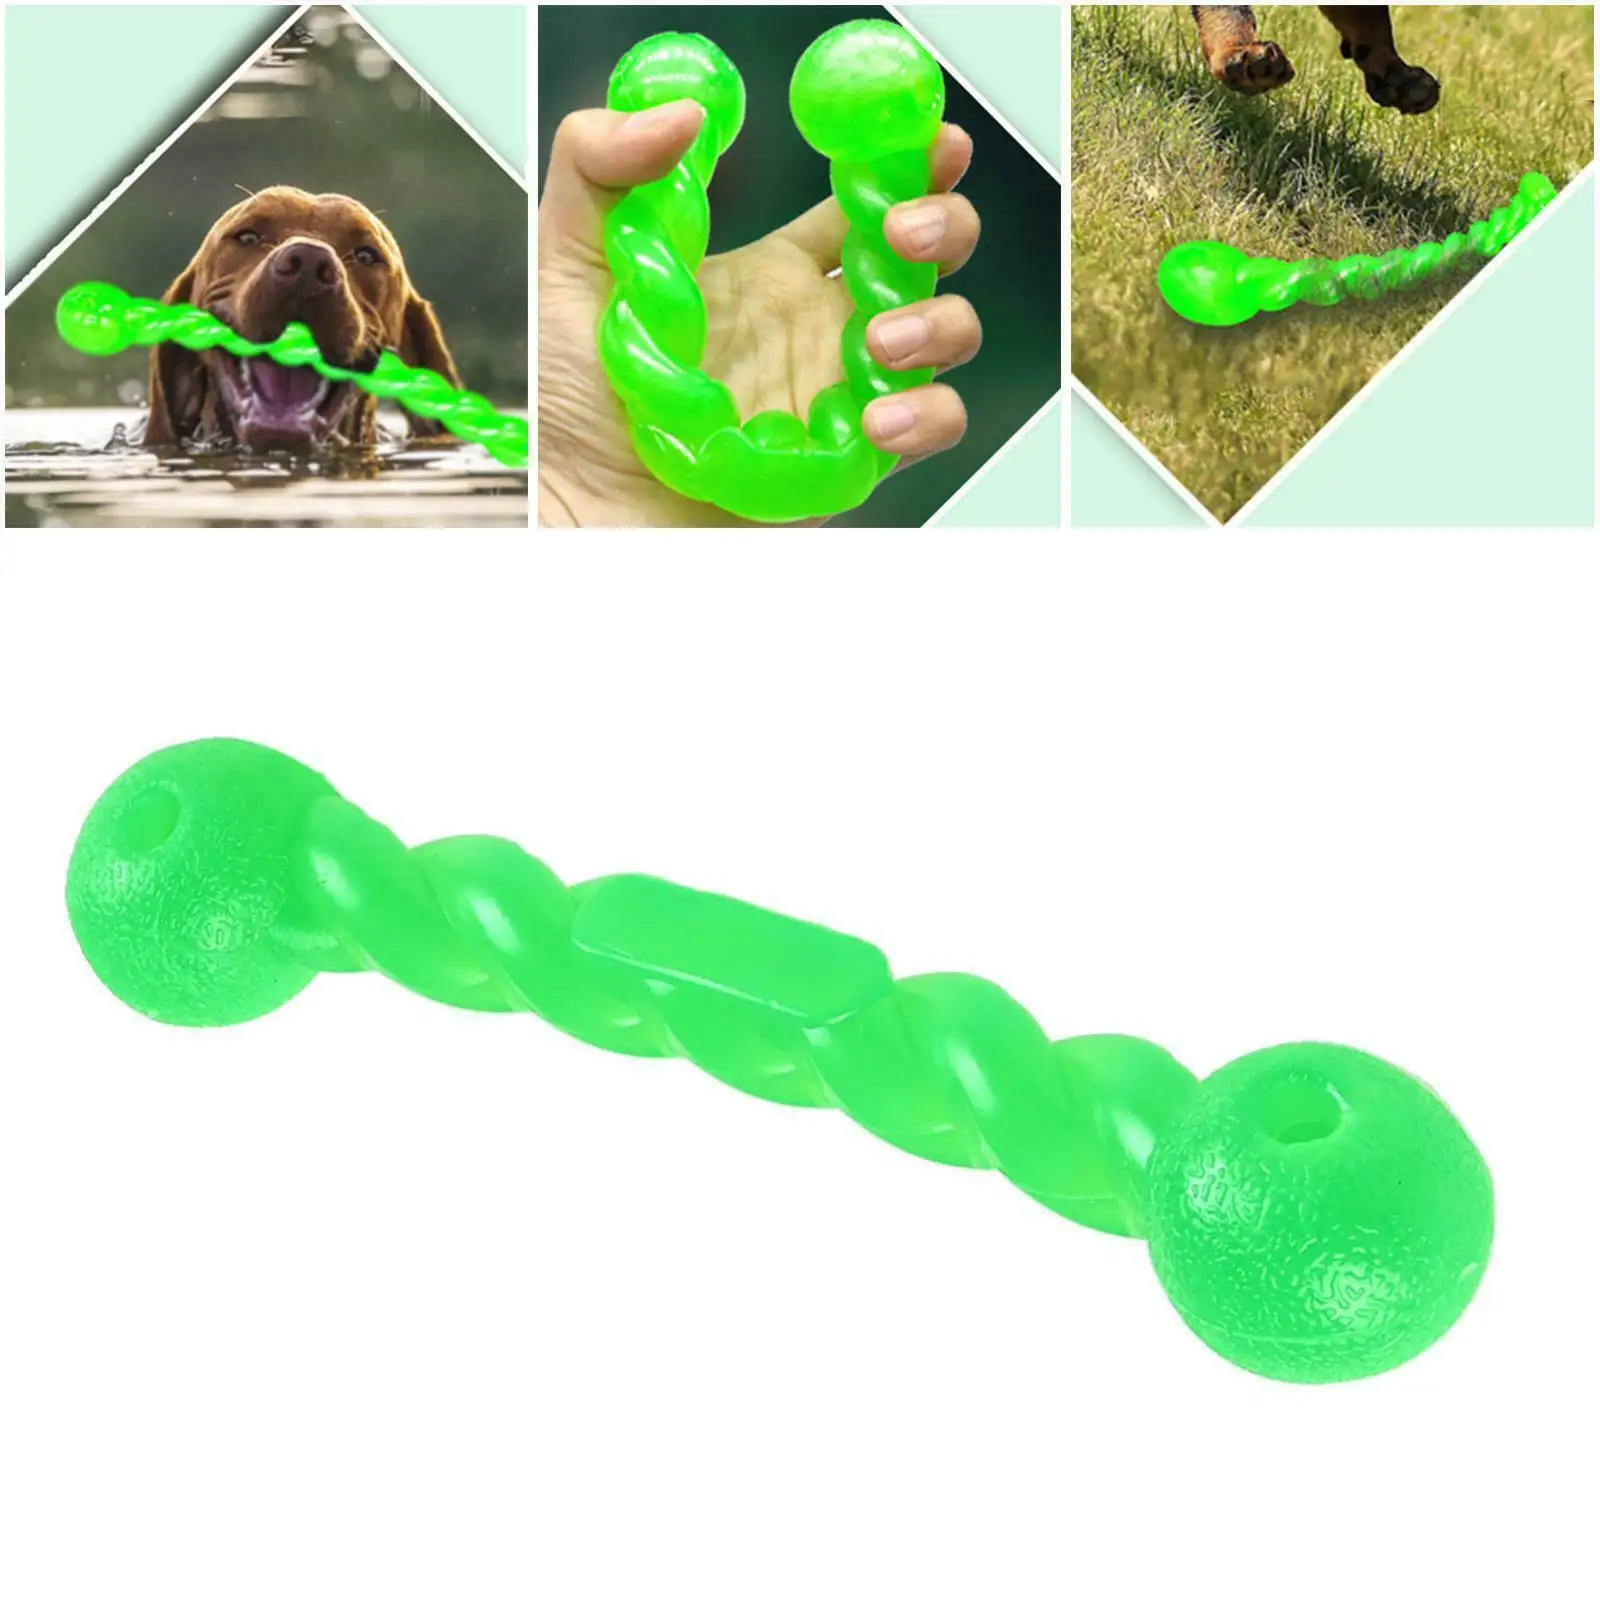 

Тренировочная интерактивная игрушка для домашних животных, забавная молярная палочка, прочная резиновая игрушка для чистки зубов, жевательная игрушка большого размера для питомцев